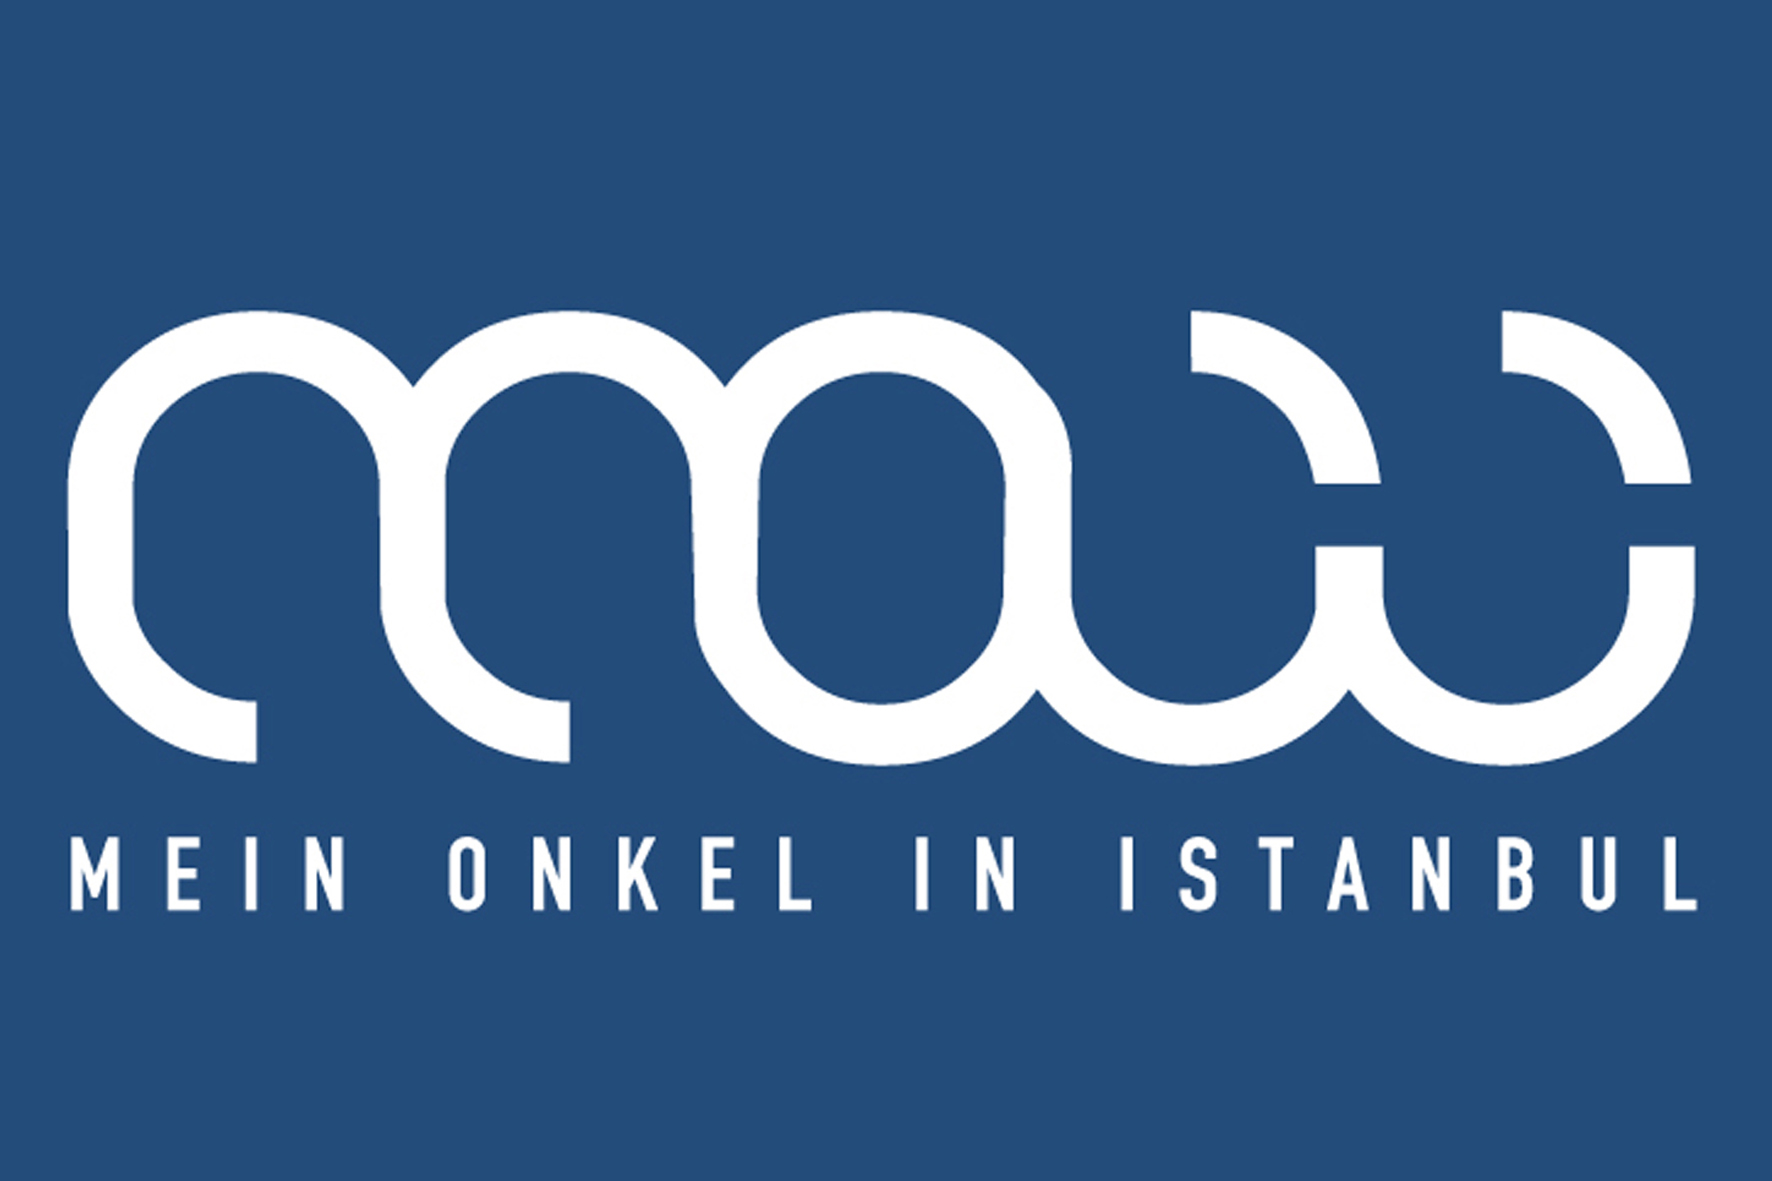 M.o.i.i. – Mein Onkel in Istanbul